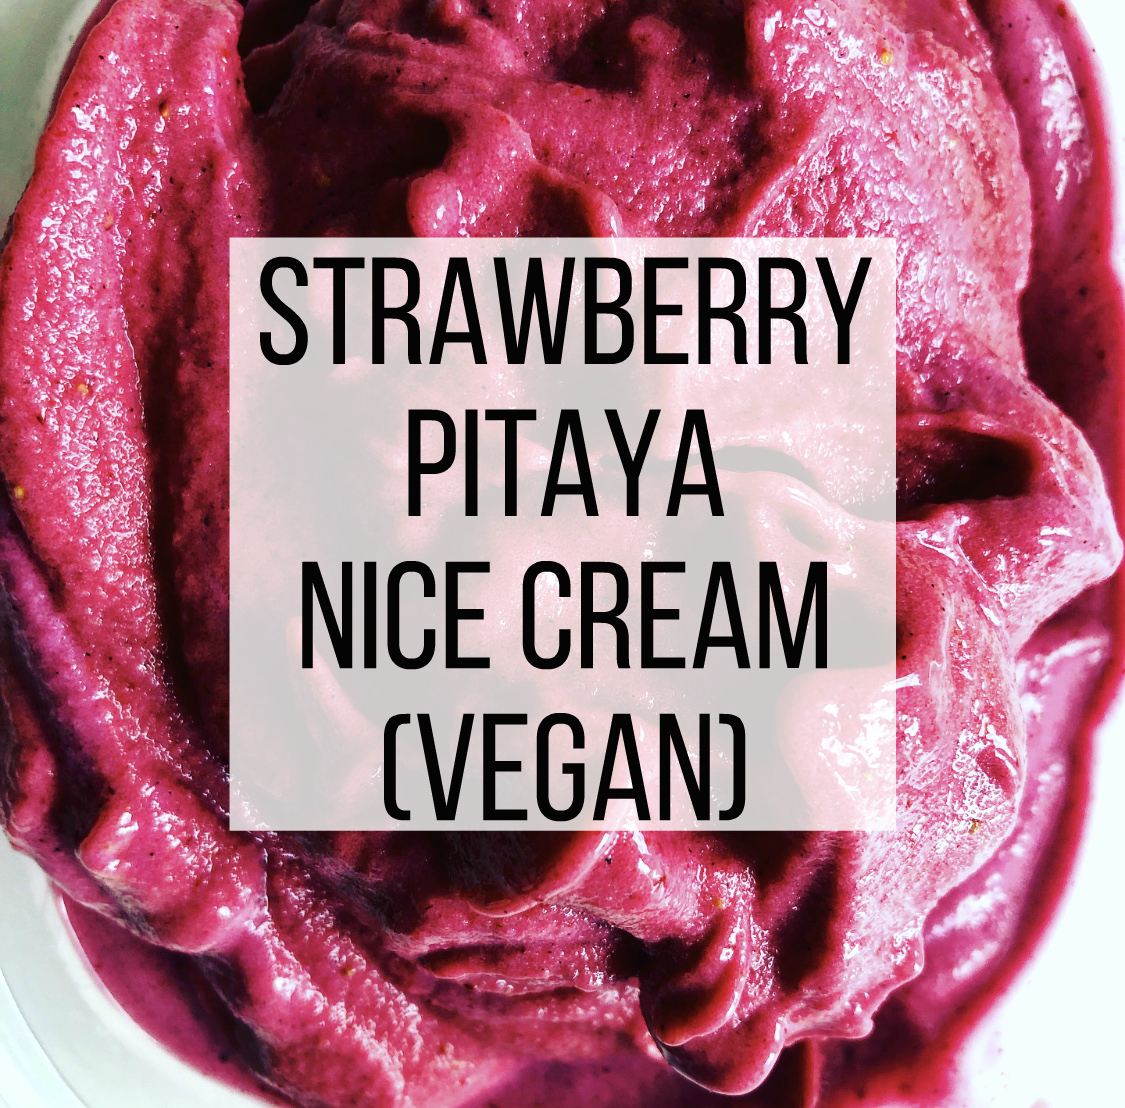 Strawberry Pitaya Nice Cream (Vegan)